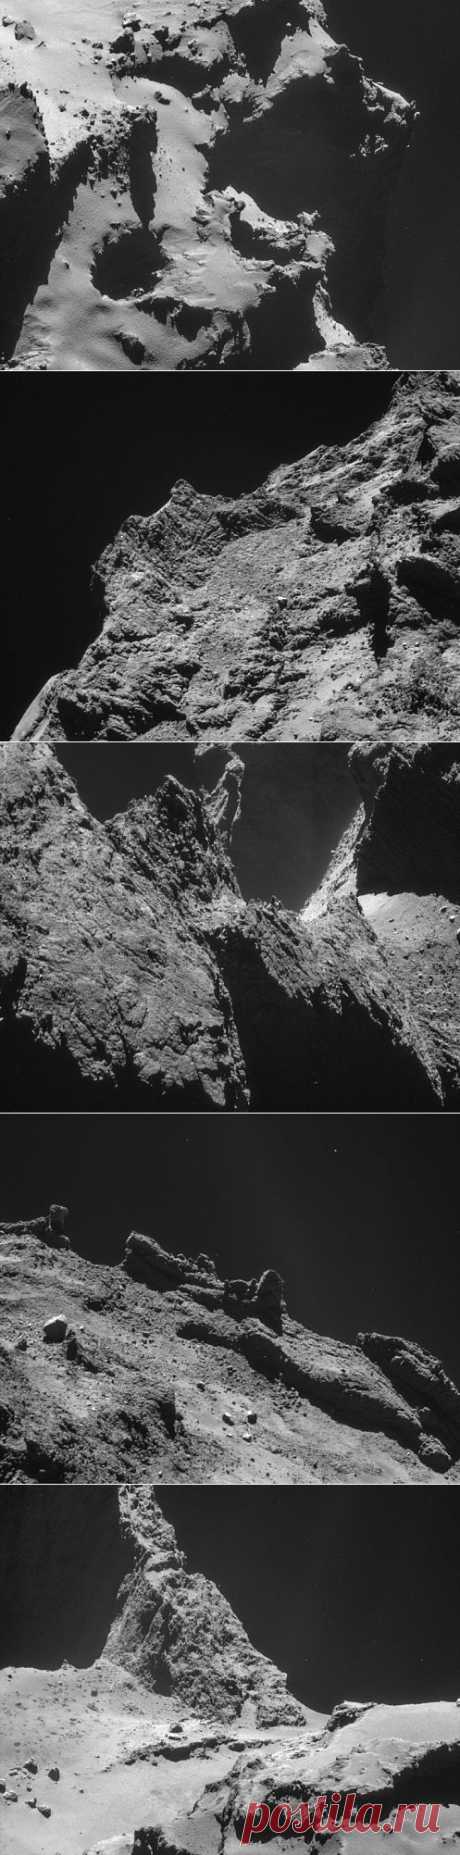 Rosetta сняла комету с очень близкого расстояния.Европейское космическое агентство обнародовало наиболее удачные ранее не публиковавшиеся снимки кометы 67P/Чурюмова-Герасименко, сделанные аппаратом Rosetta во второй половине октября с расстояния менее 10 километров.